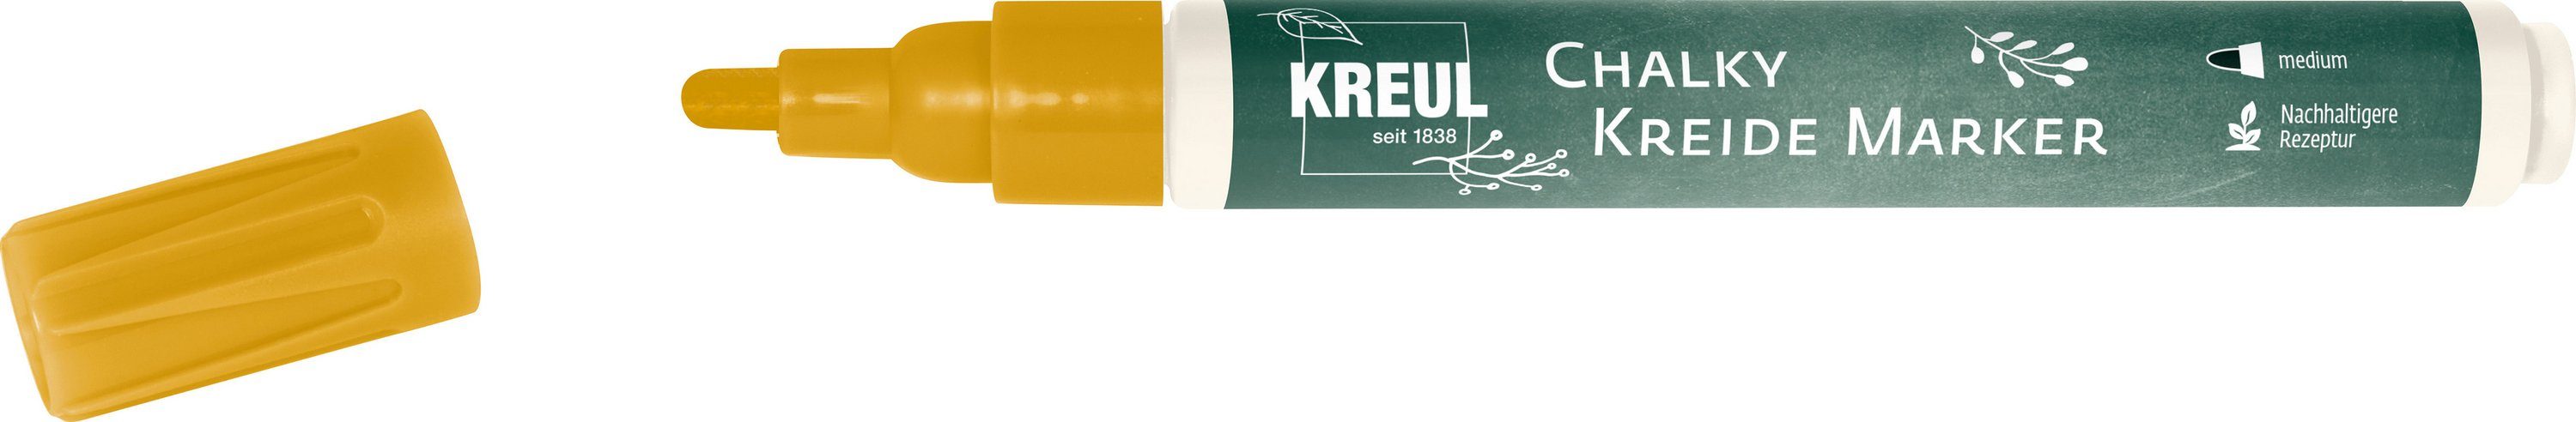 2-3mm Kreul Chalky, Glow Golden Strichstärke Kreidemarker